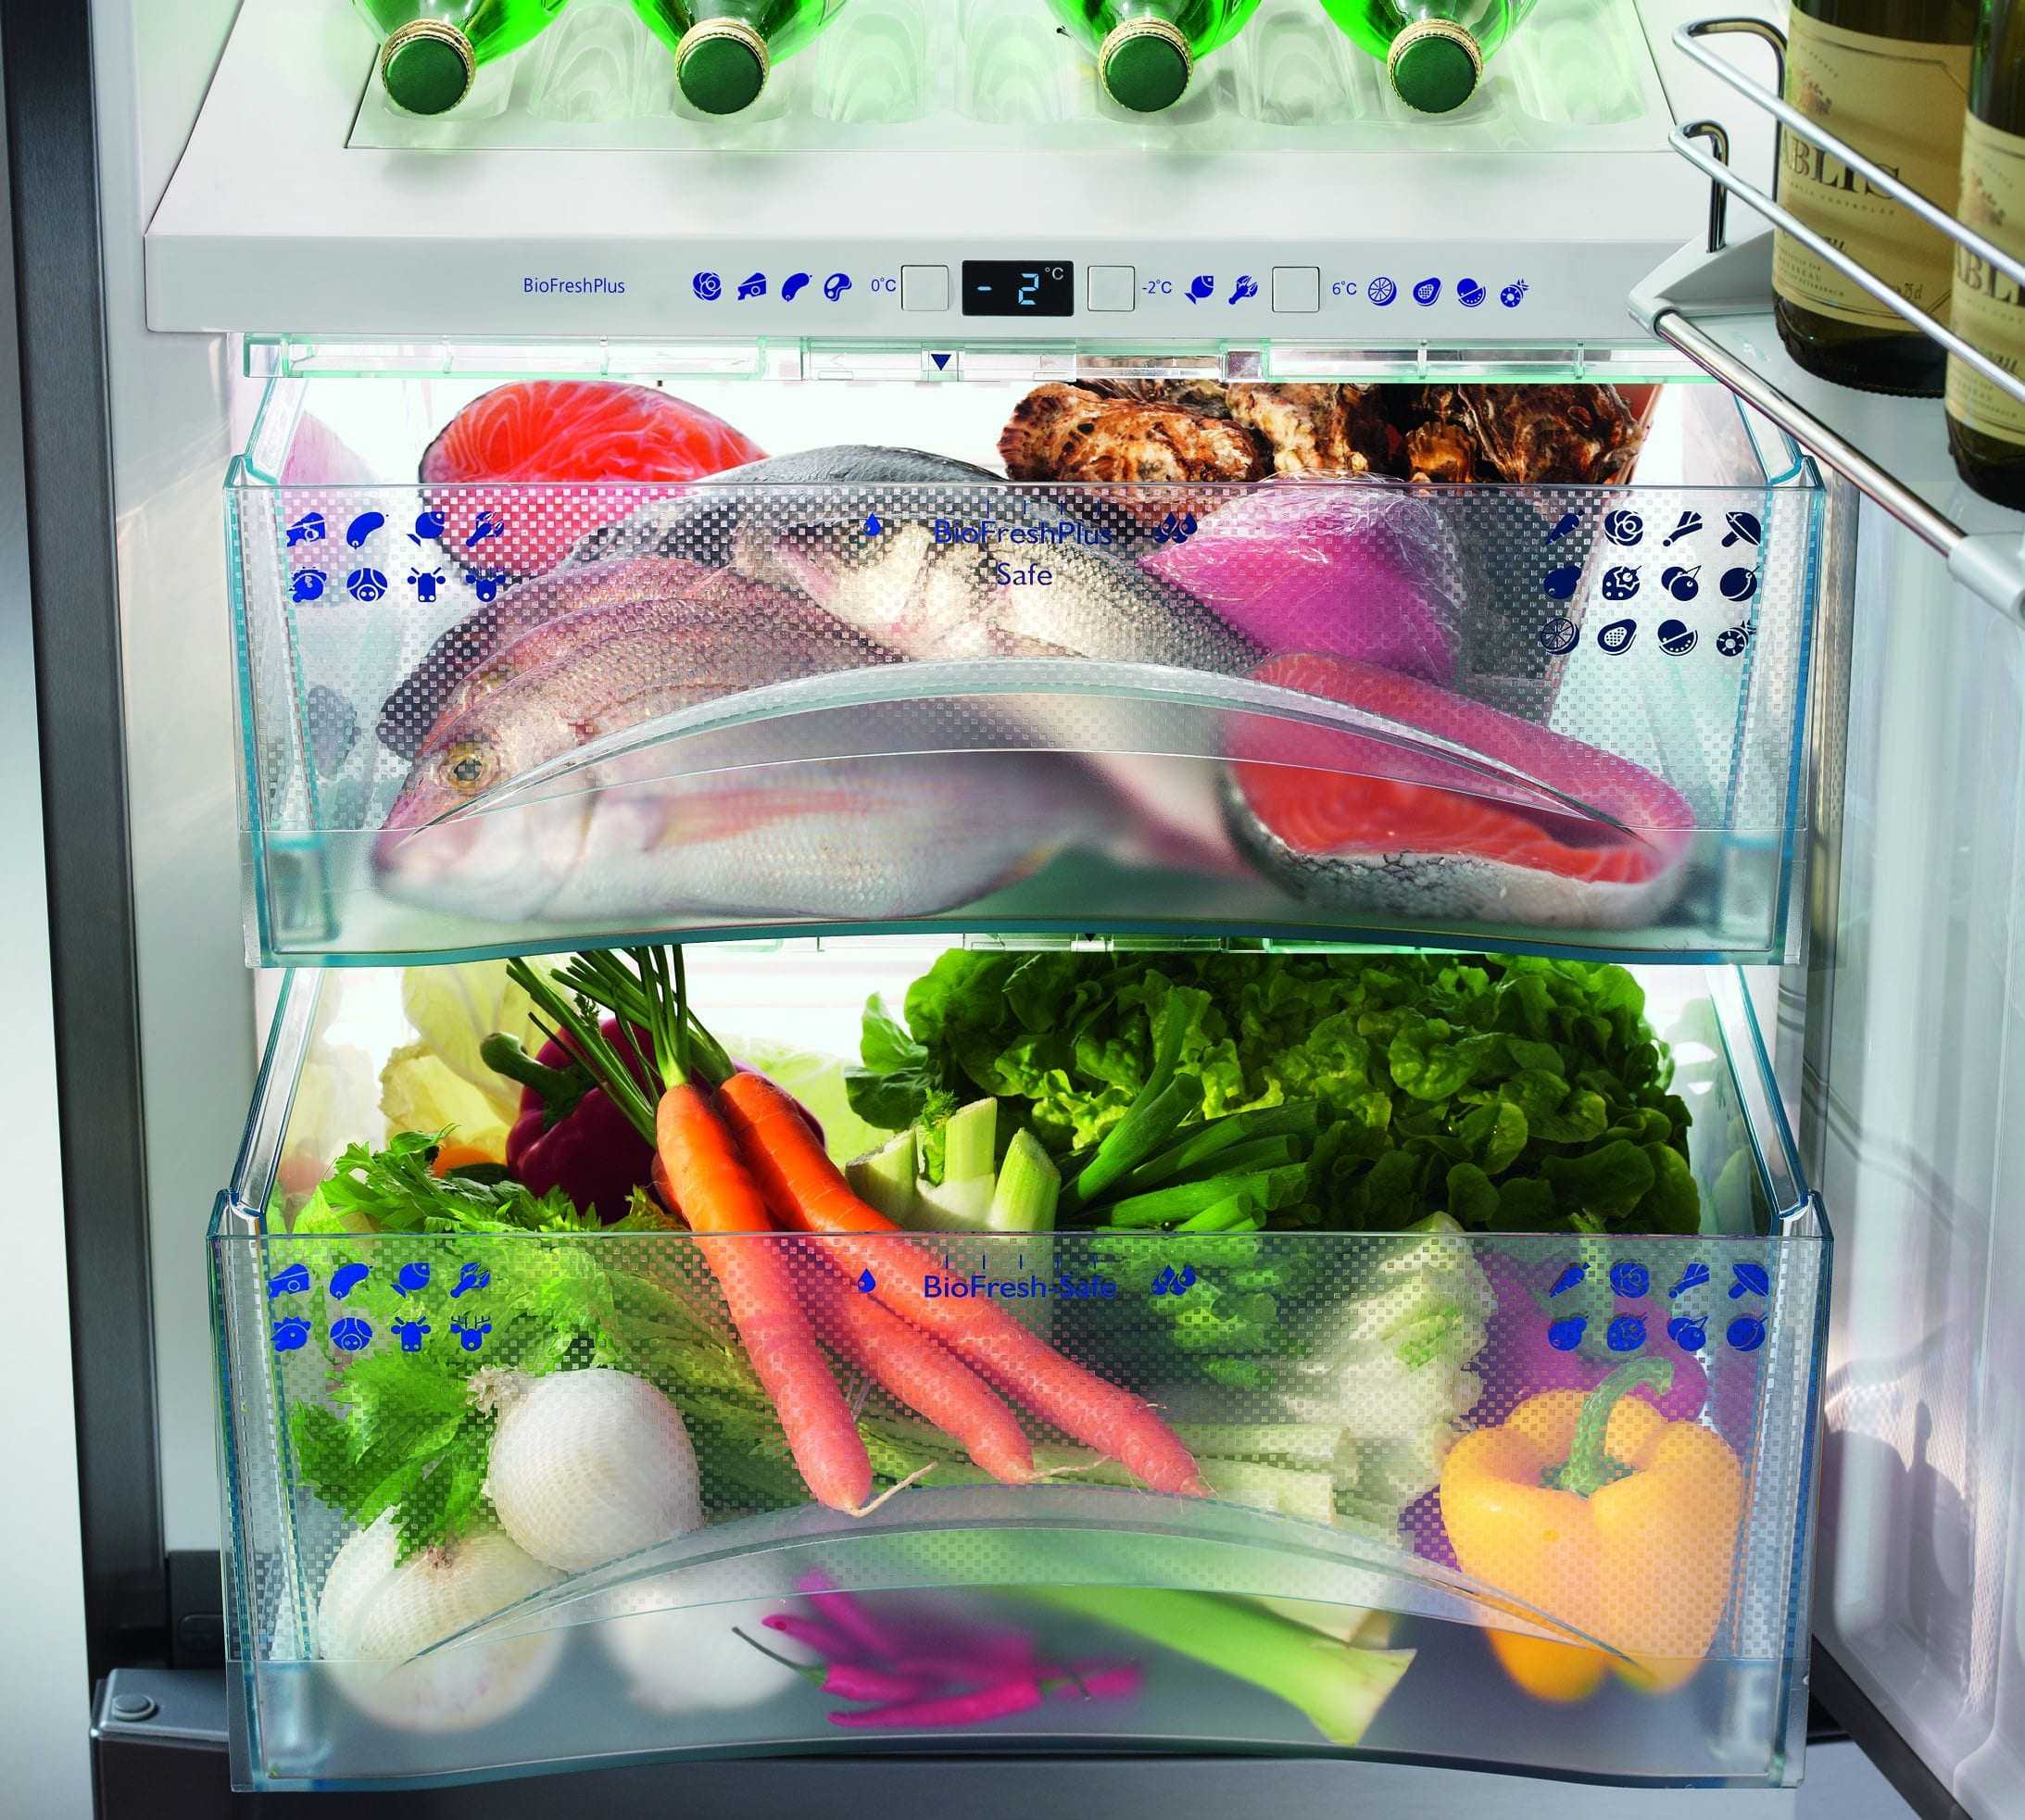 Ikb 3564 premium biofresh встраиваемый холодильник с функцией biofresh - liebherr